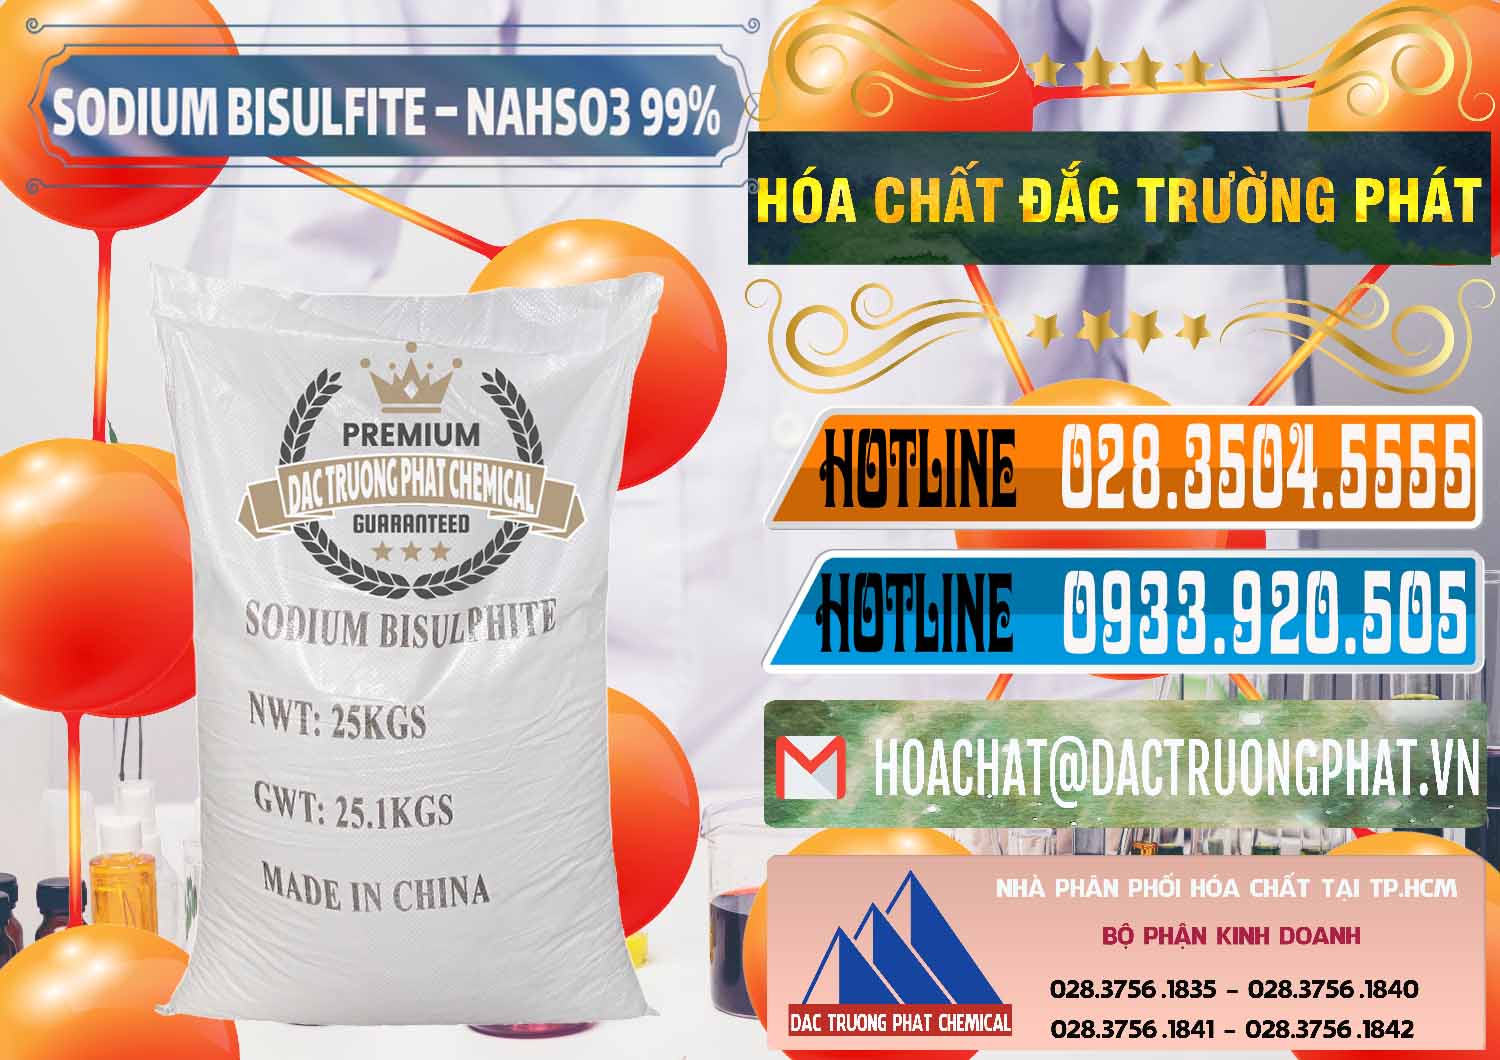 Cty cung cấp ( bán ) Sodium Bisulfite – NAHSO3 Trung Quốc China - 0140 - Chuyên bán và phân phối hóa chất tại TP.HCM - stmp.net